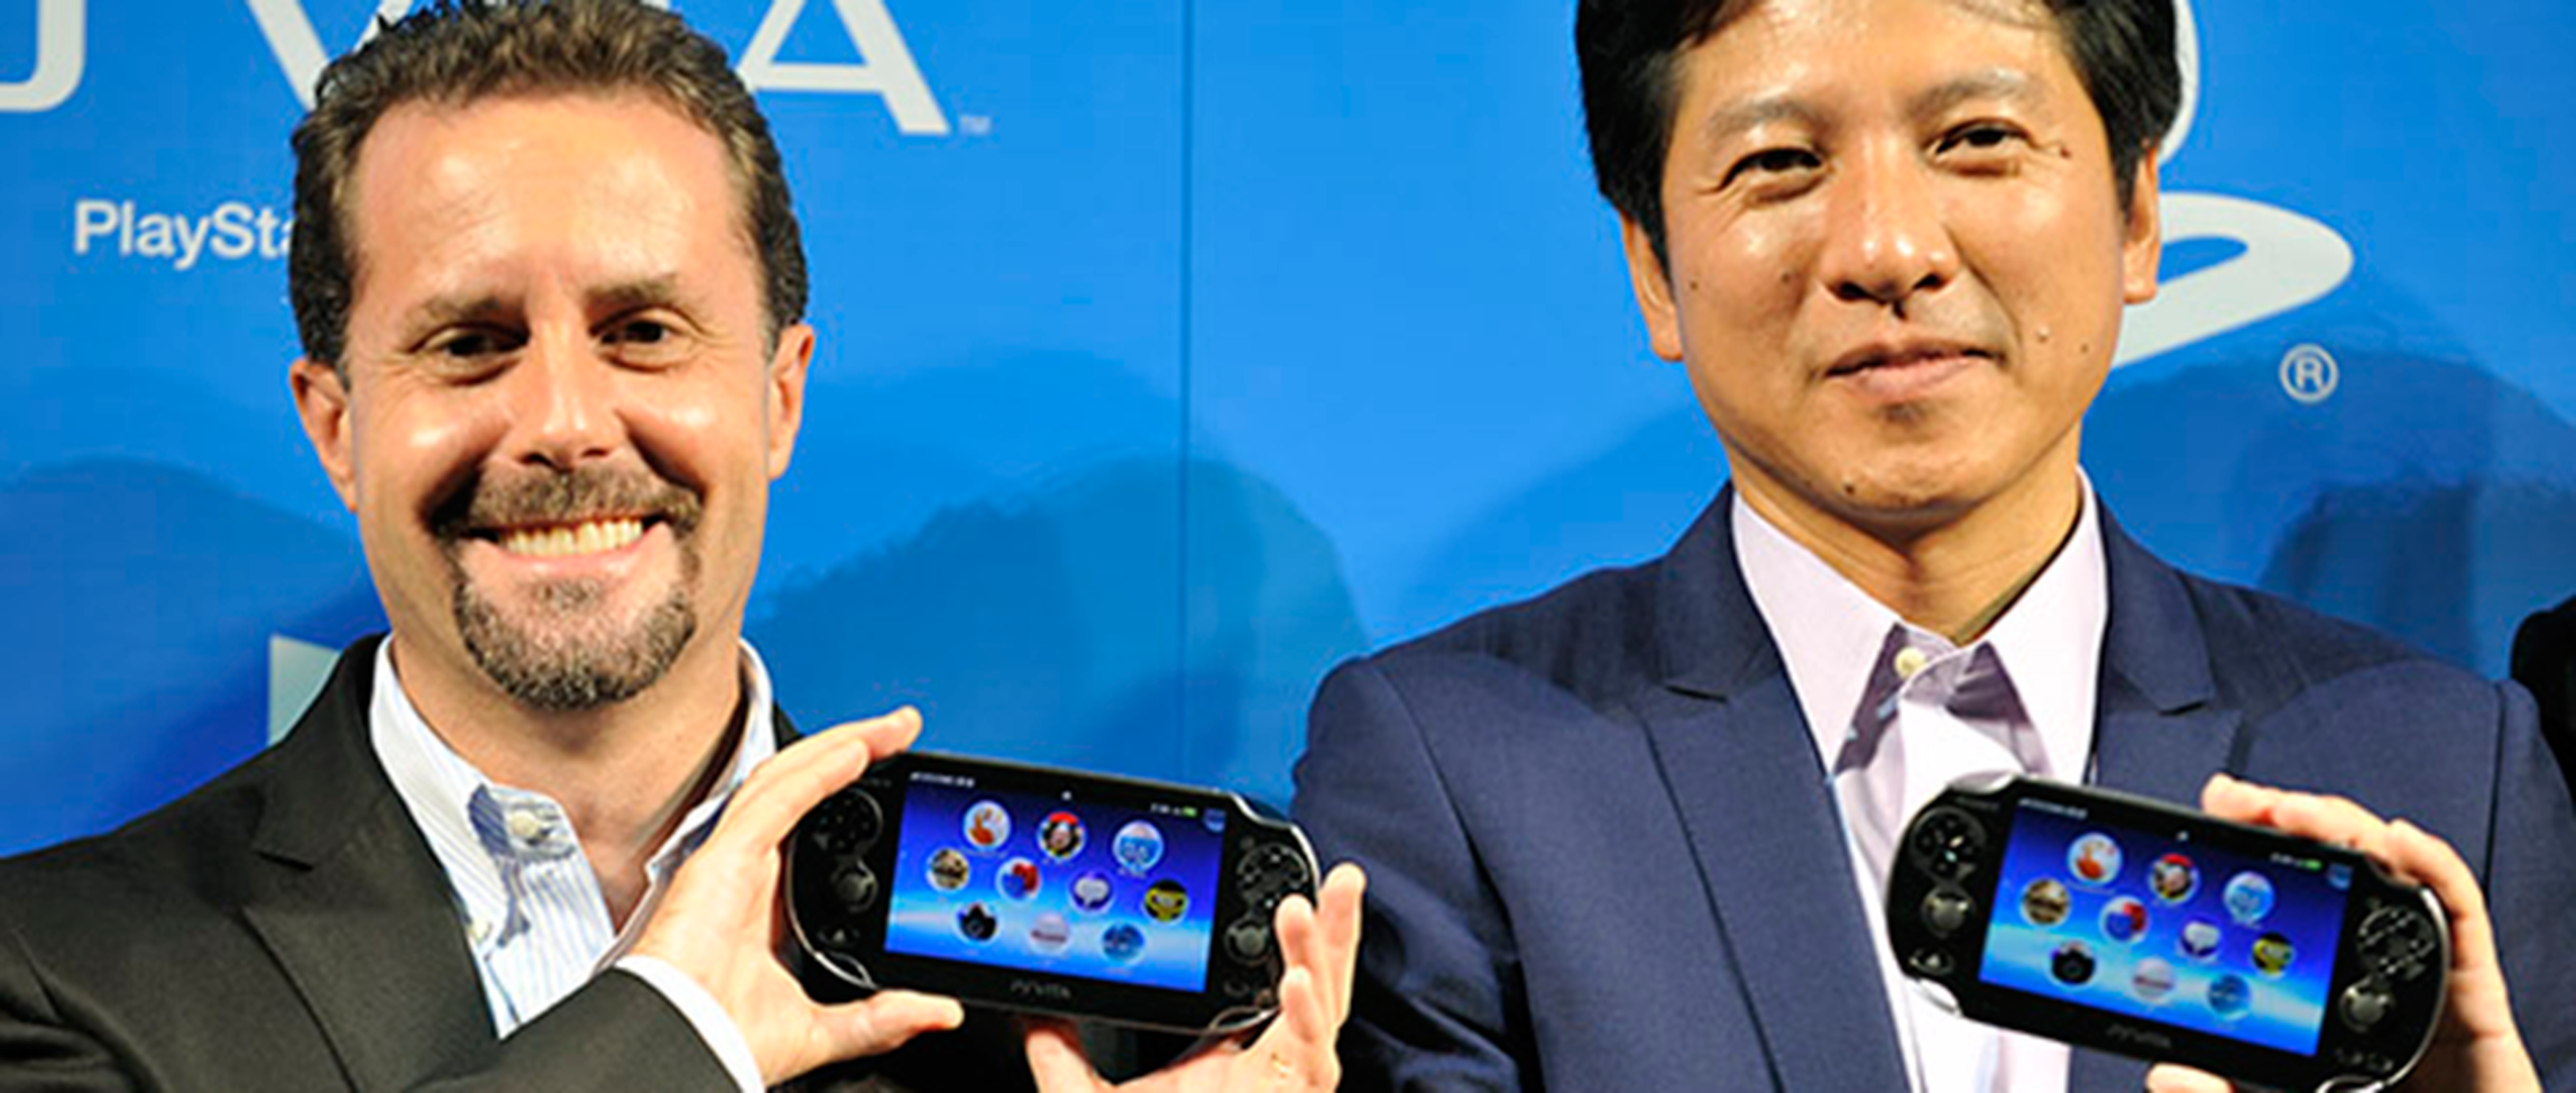 El futuro de PS Vita fuera de Japón no está claro